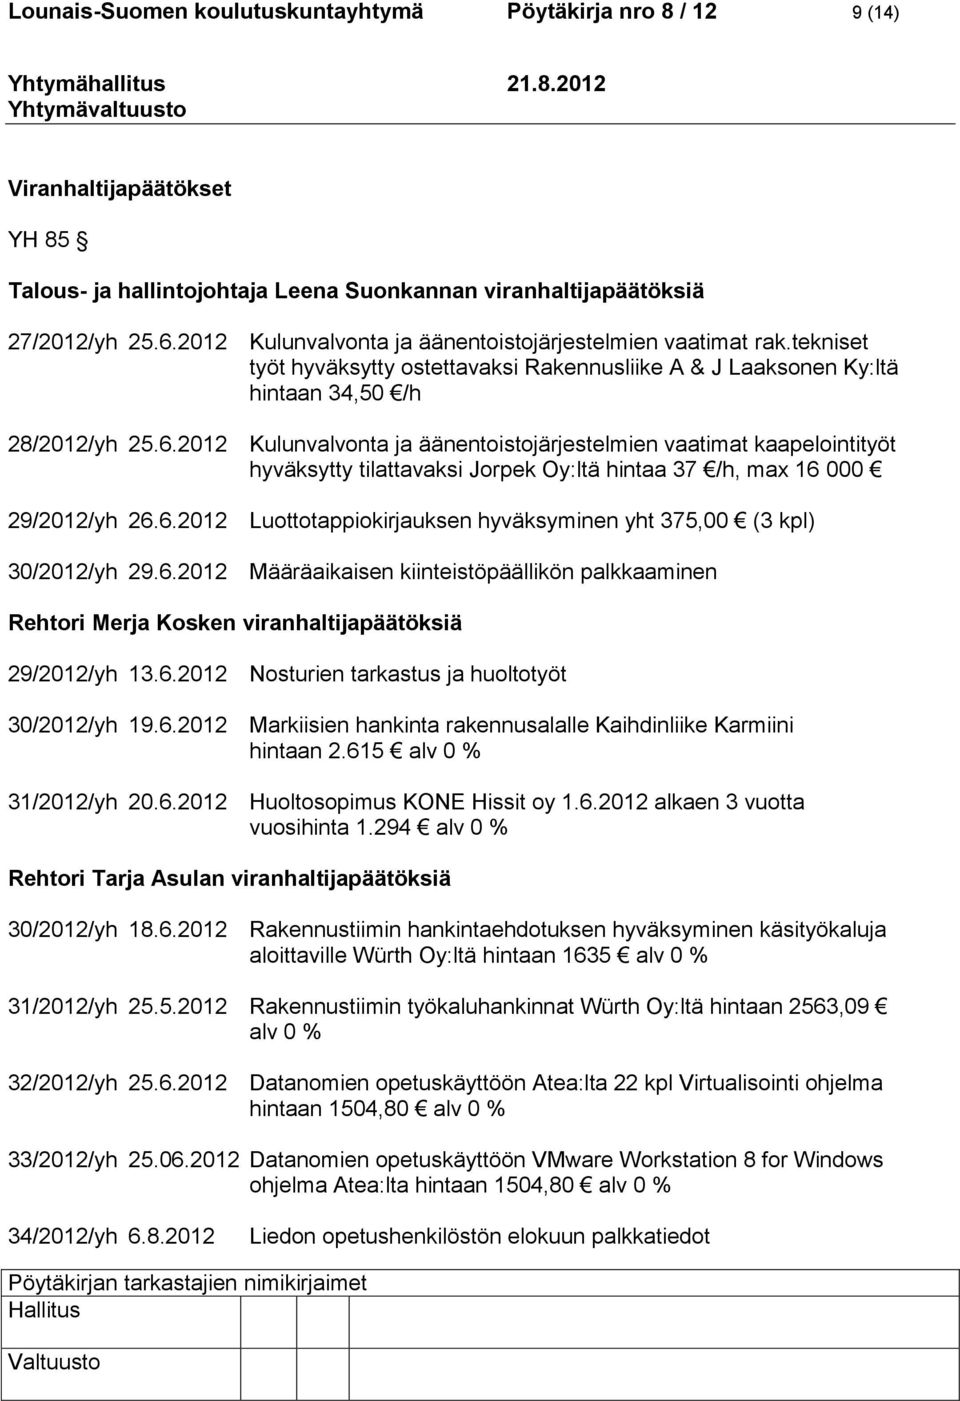 2012 Kulunvalvonta ja äänentoistojärjestelmien vaatimat kaapelointityöt hyväksytty tilattavaksi Jorpek Oy:ltä hintaa 37 /h, max 16 